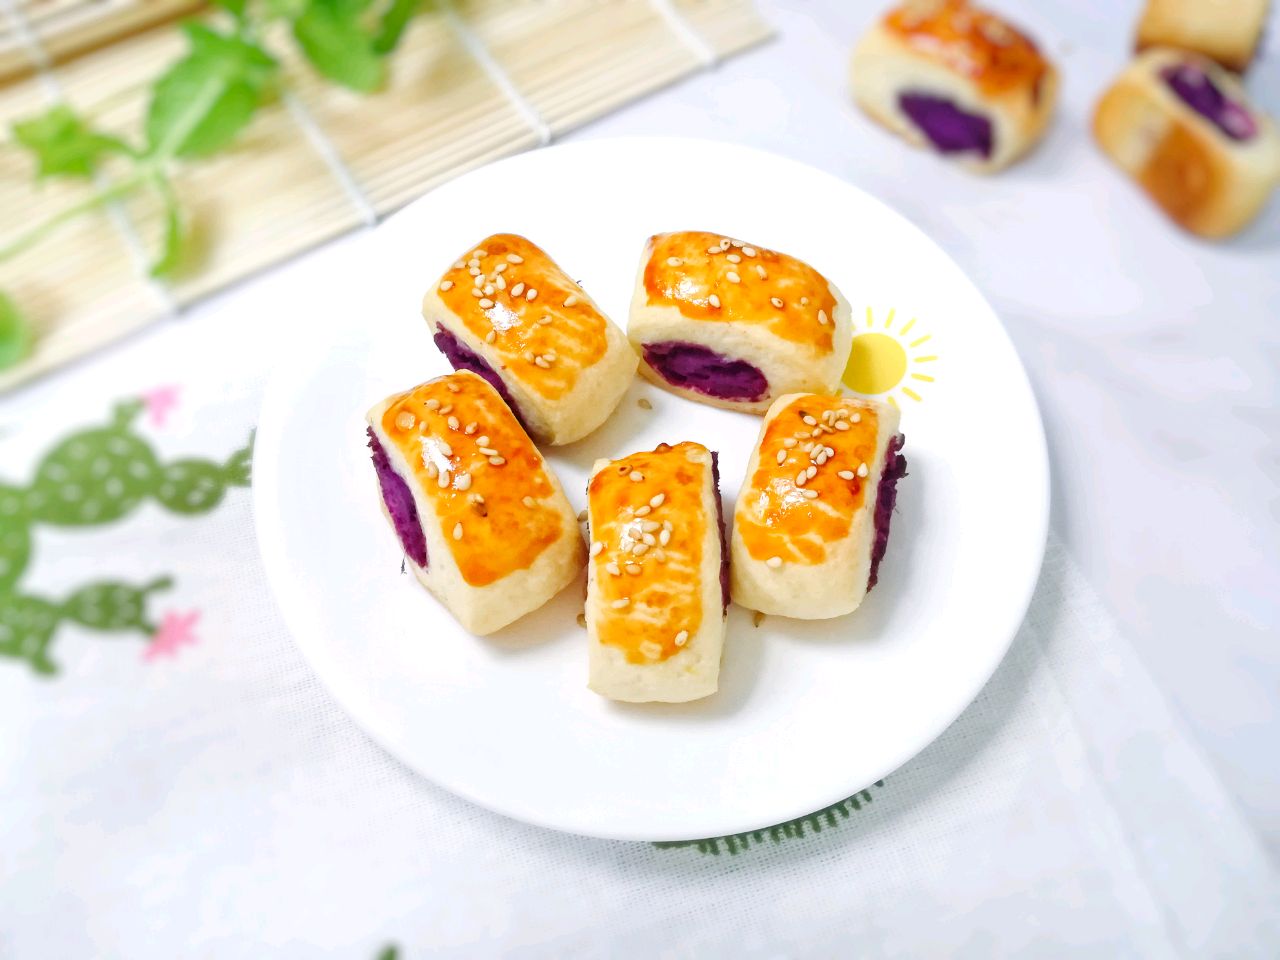 12m 香软紫薯点心,简单无难度零失败:宝宝辅食营养食谱菜谱